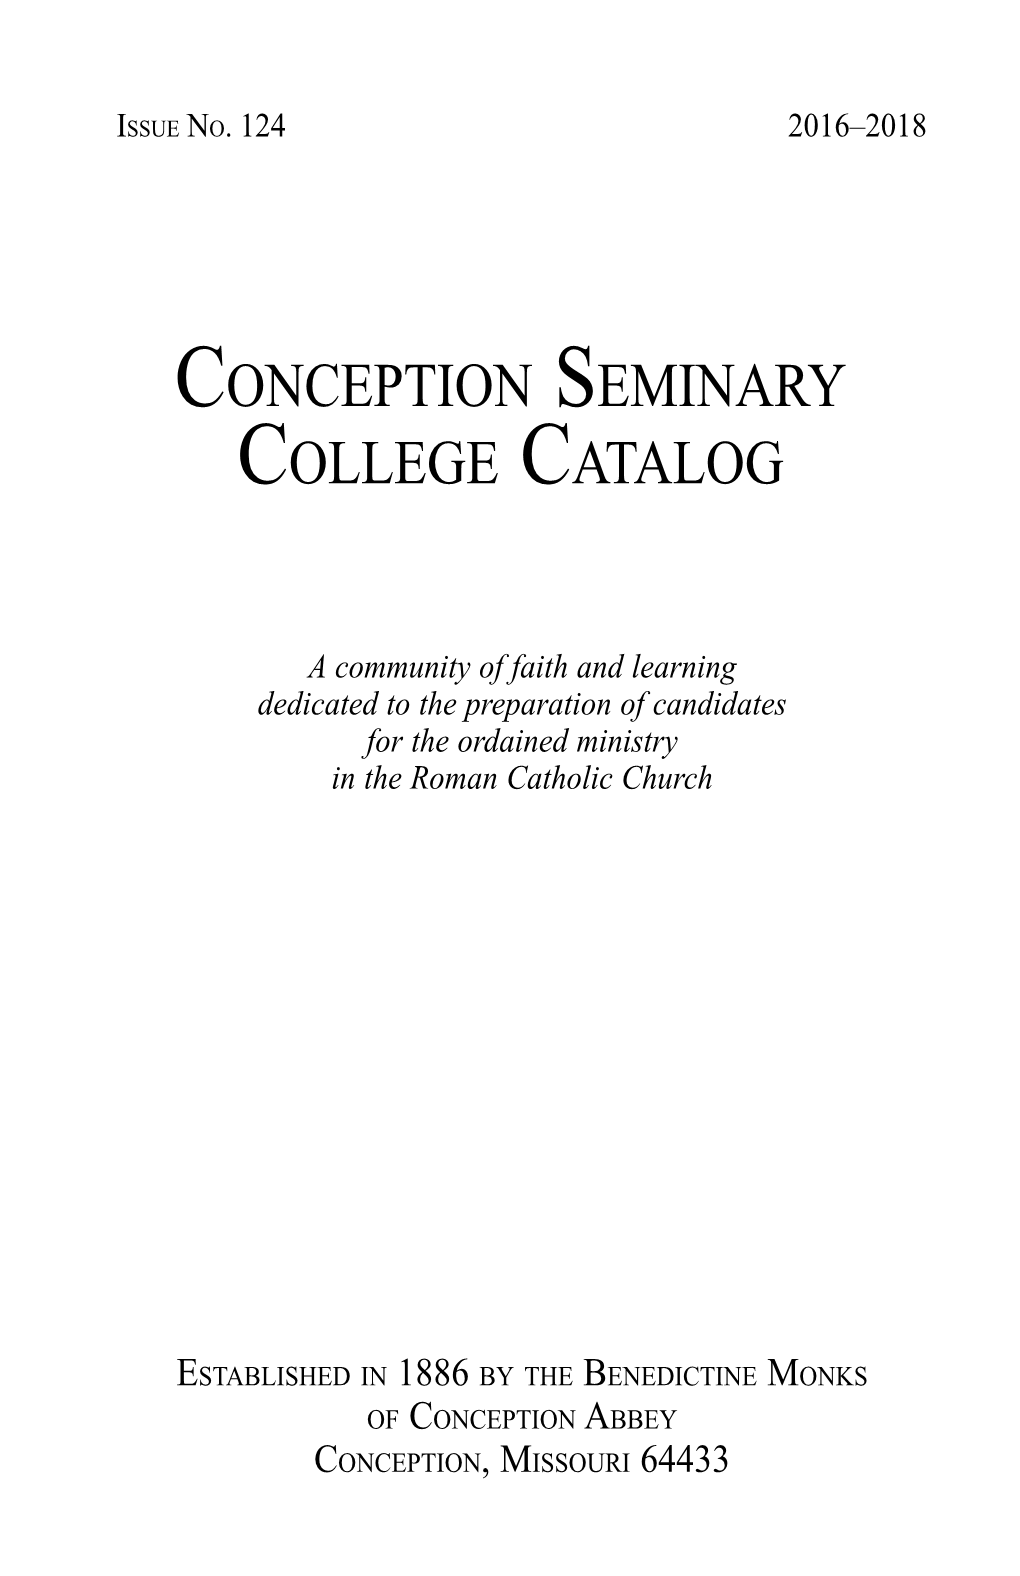 Conception Seminary College Catalog